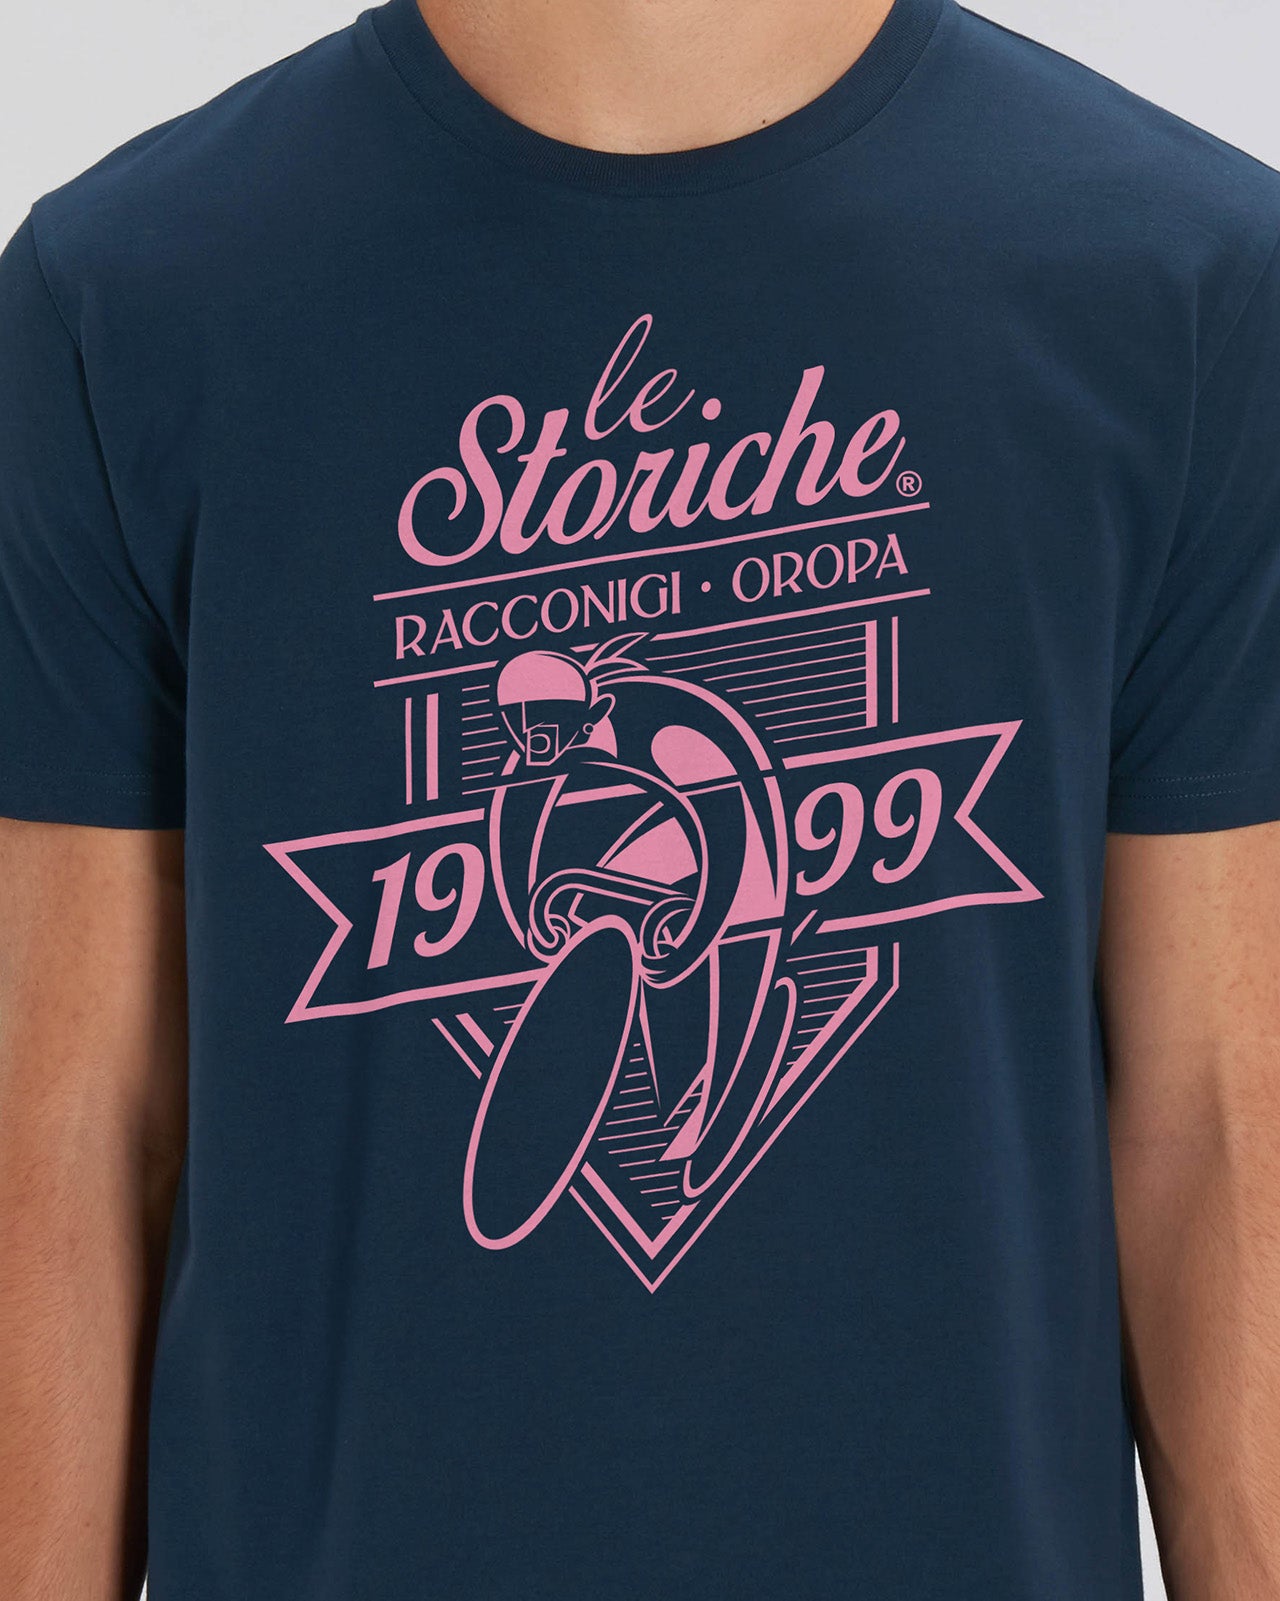 t-shirt "le Storiche" mod. 1999